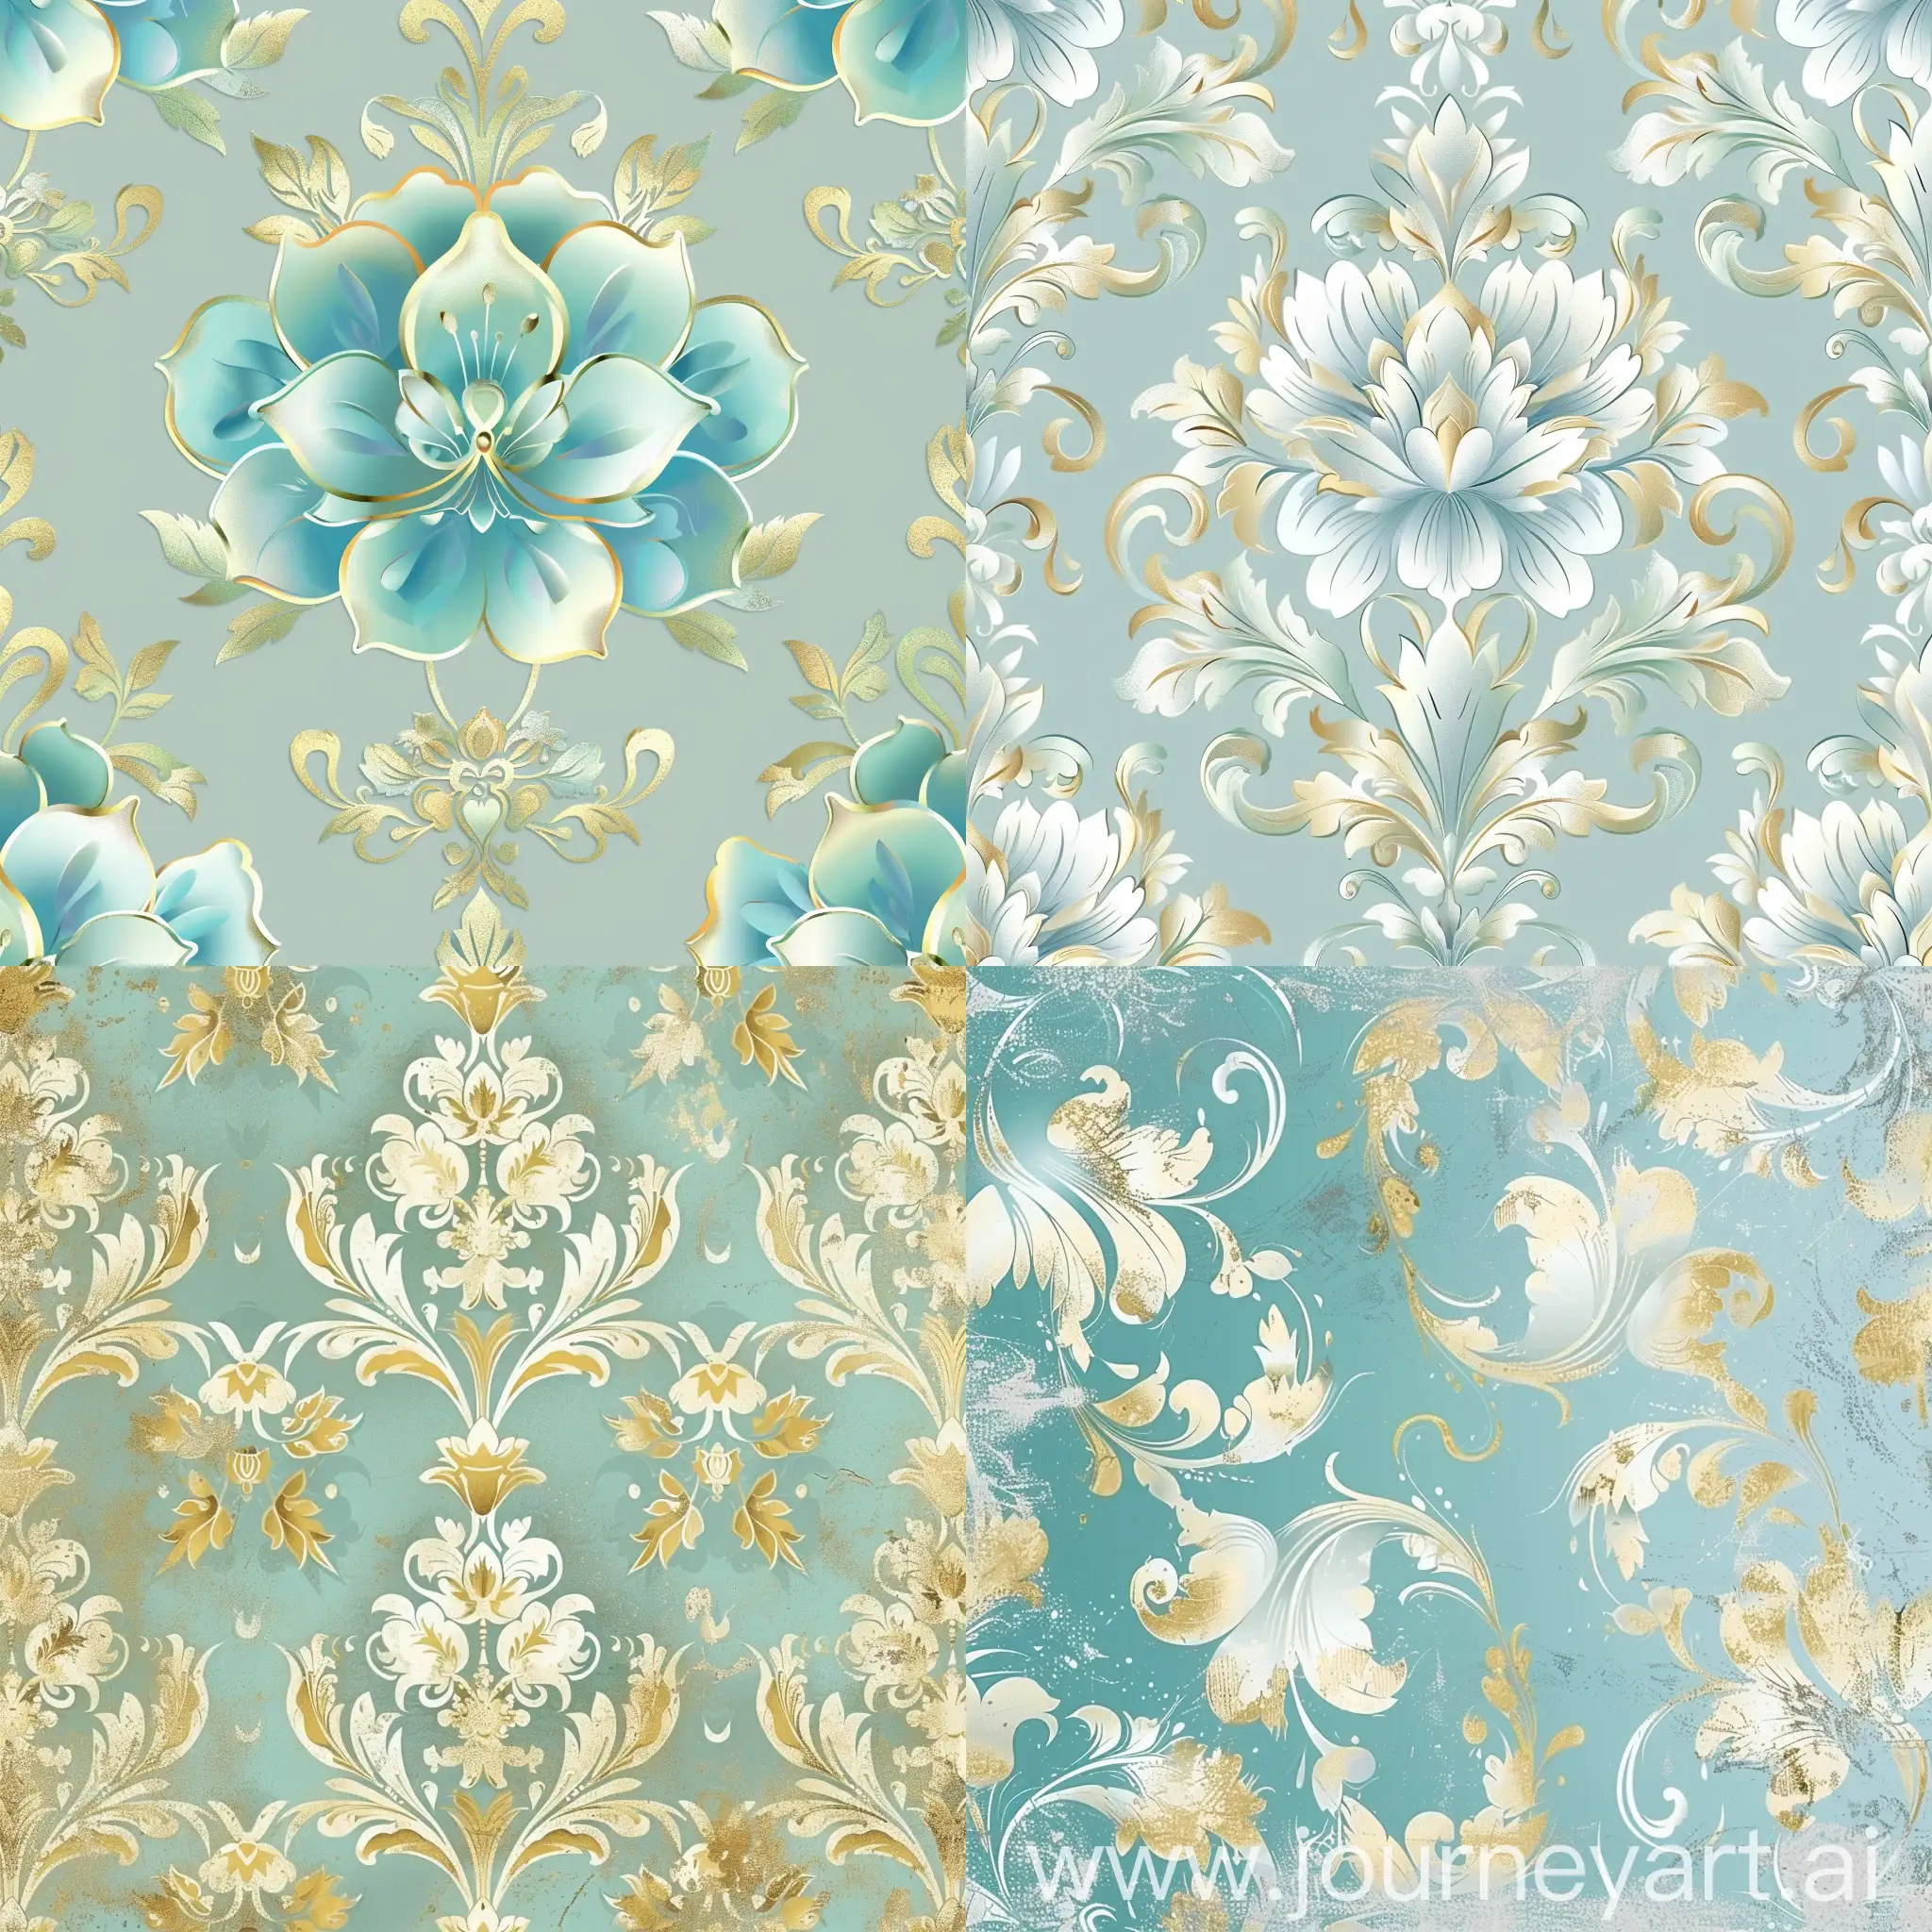 Elegant-Fantasy-Floral-Damask-Background-in-Blue-Gold-and-Mint-Green